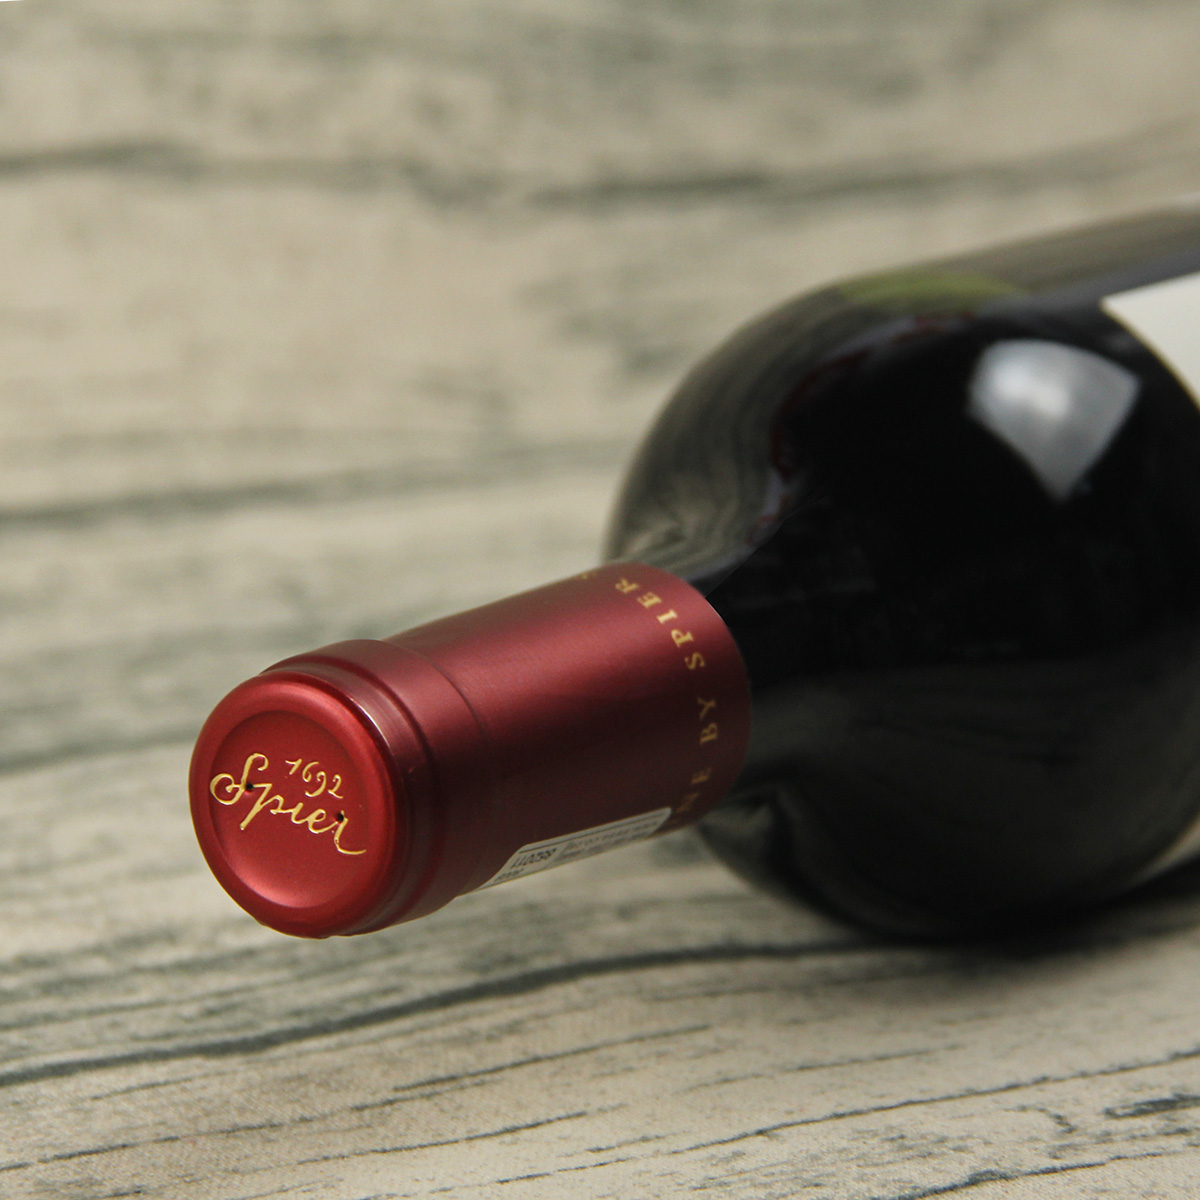 南非斯泰伦博斯斯皮尔酒庄创意区间系列8号干红葡萄酒红酒